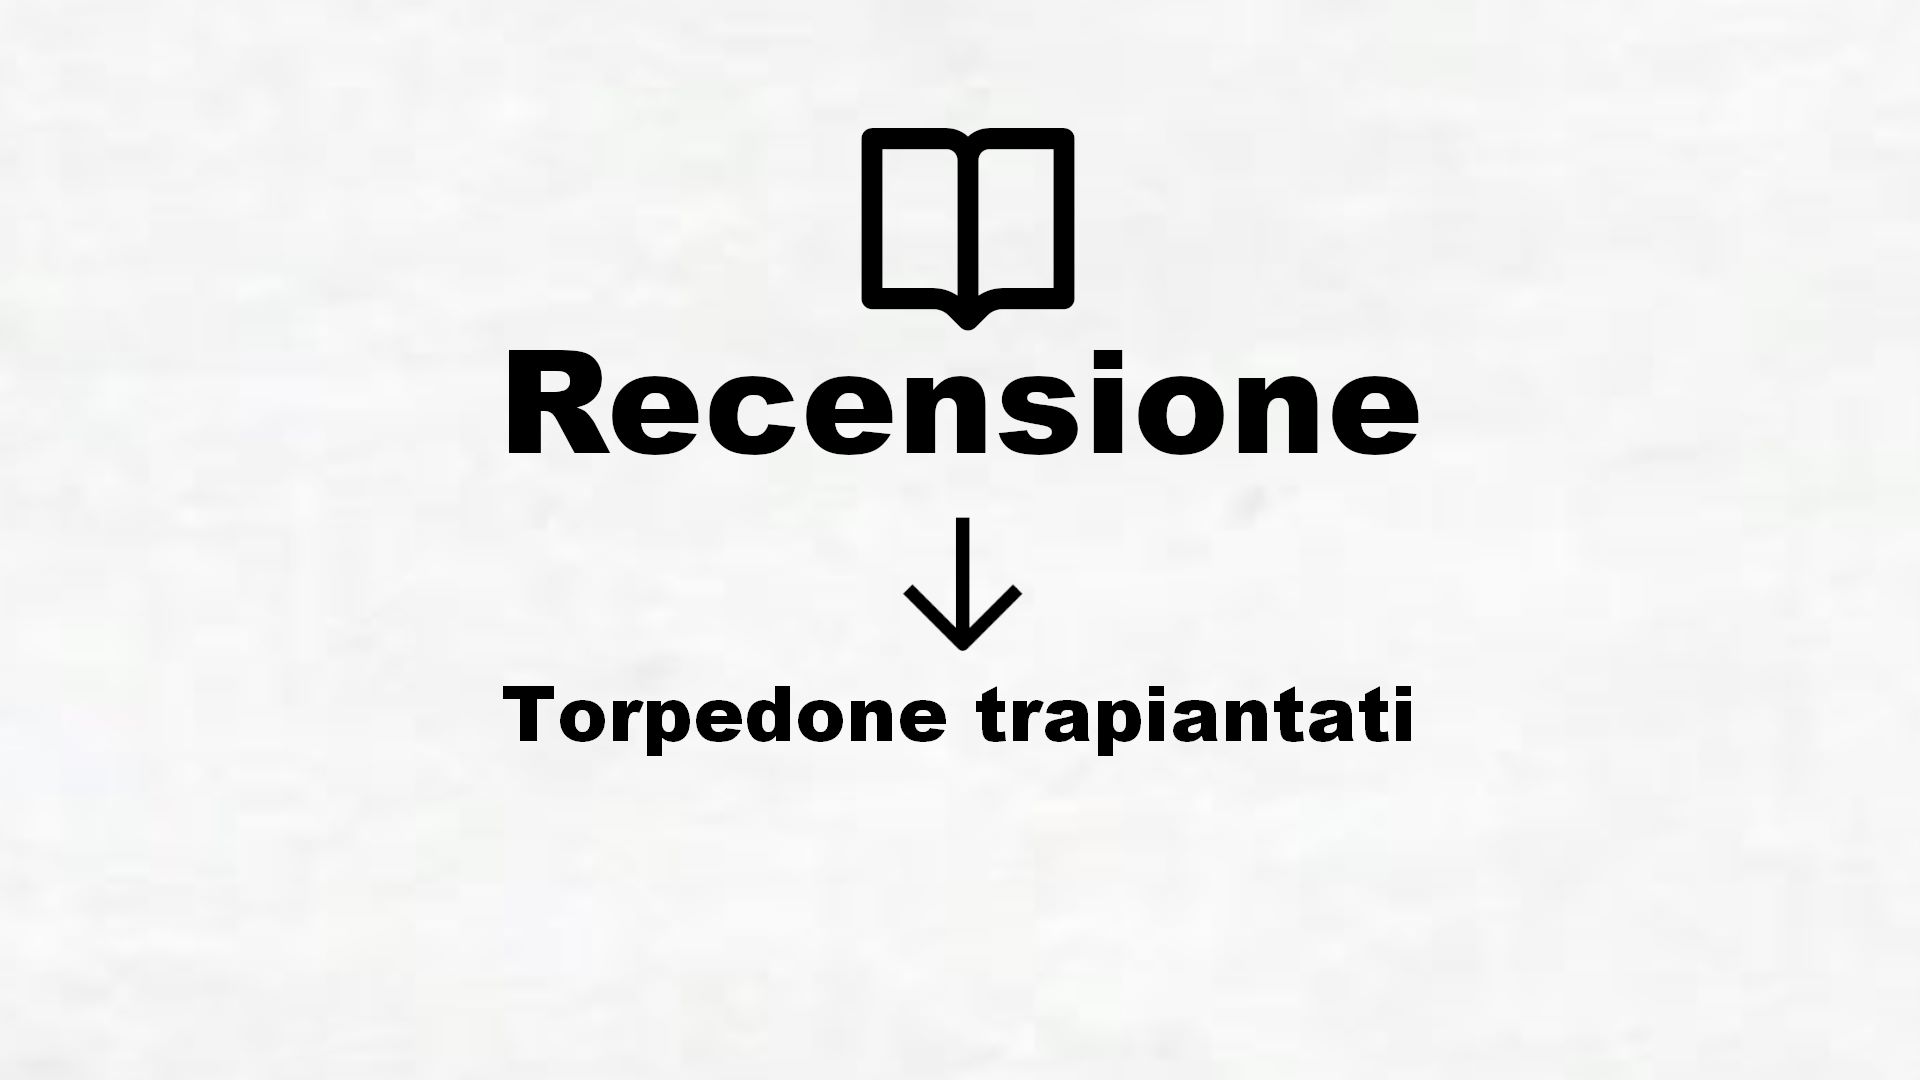 Torpedone trapiantati – Recensione Libro